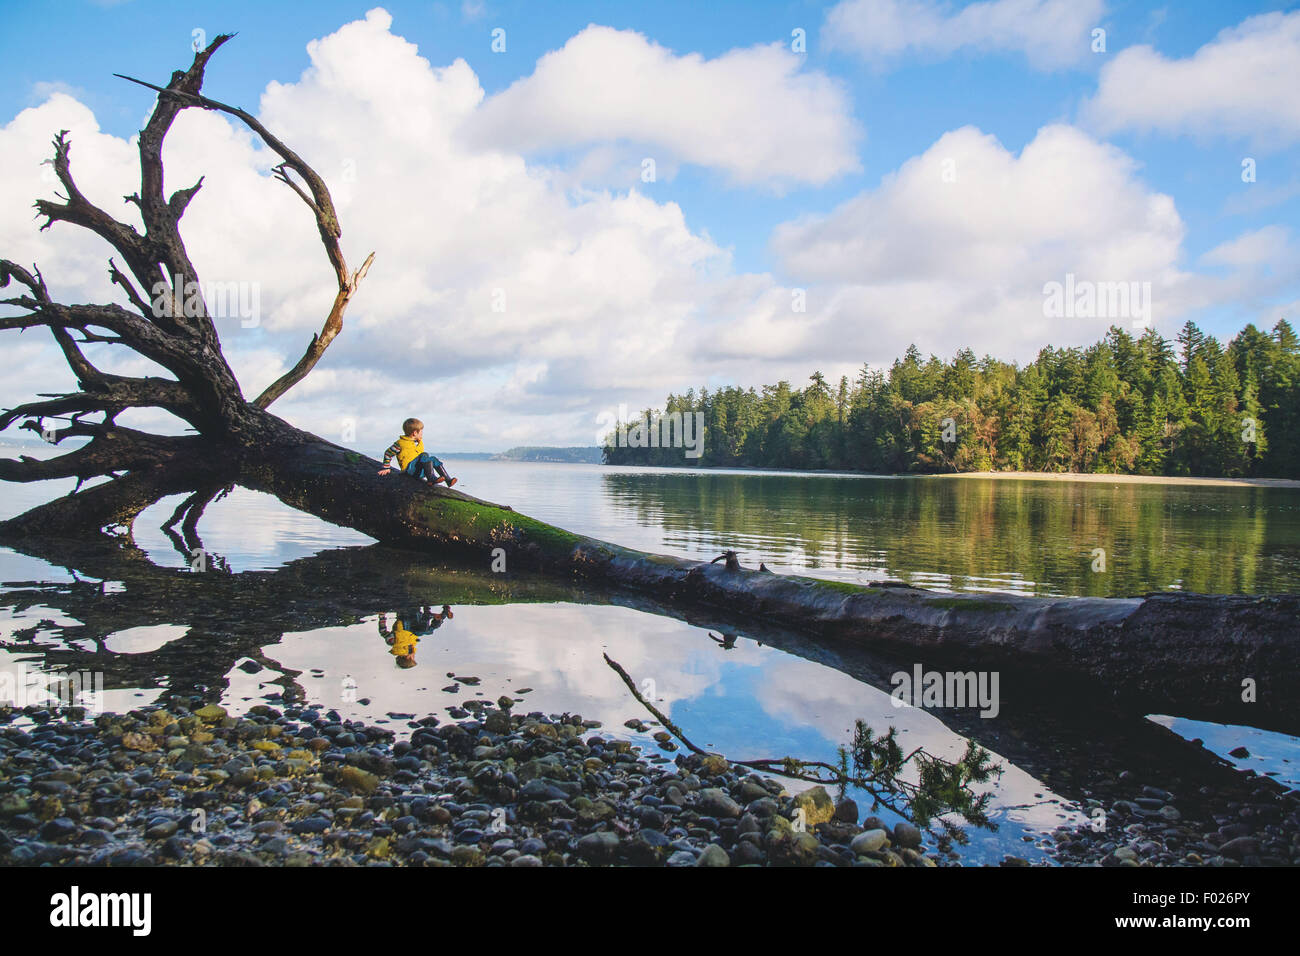 Ritratto di un ragazzo seduto su un albero caduto nel lago Foto Stock